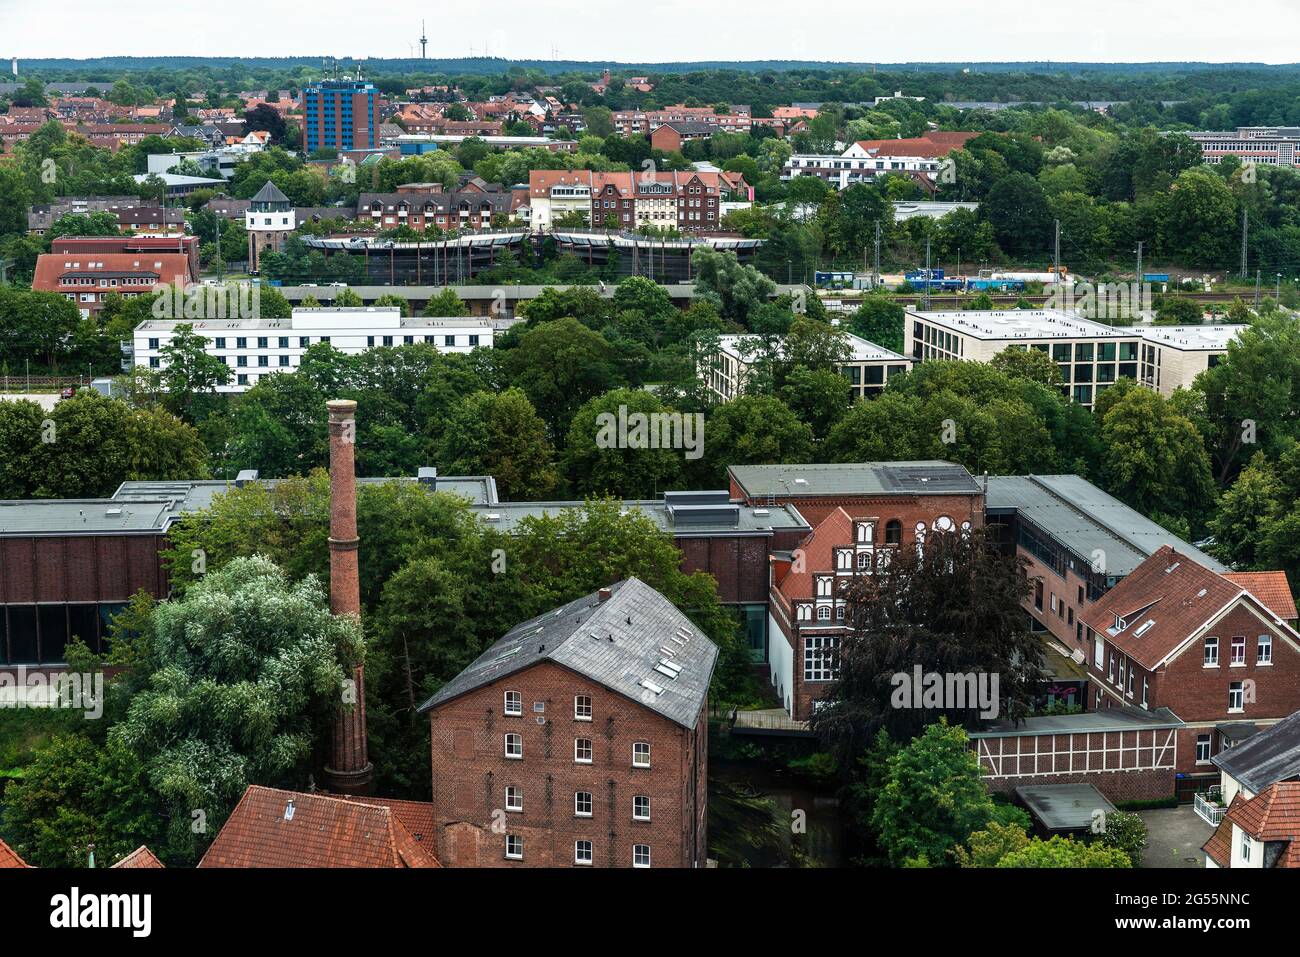 Panorama of Lüneburg in Lunenburg, Lower Saxony, Germany Stock Photo